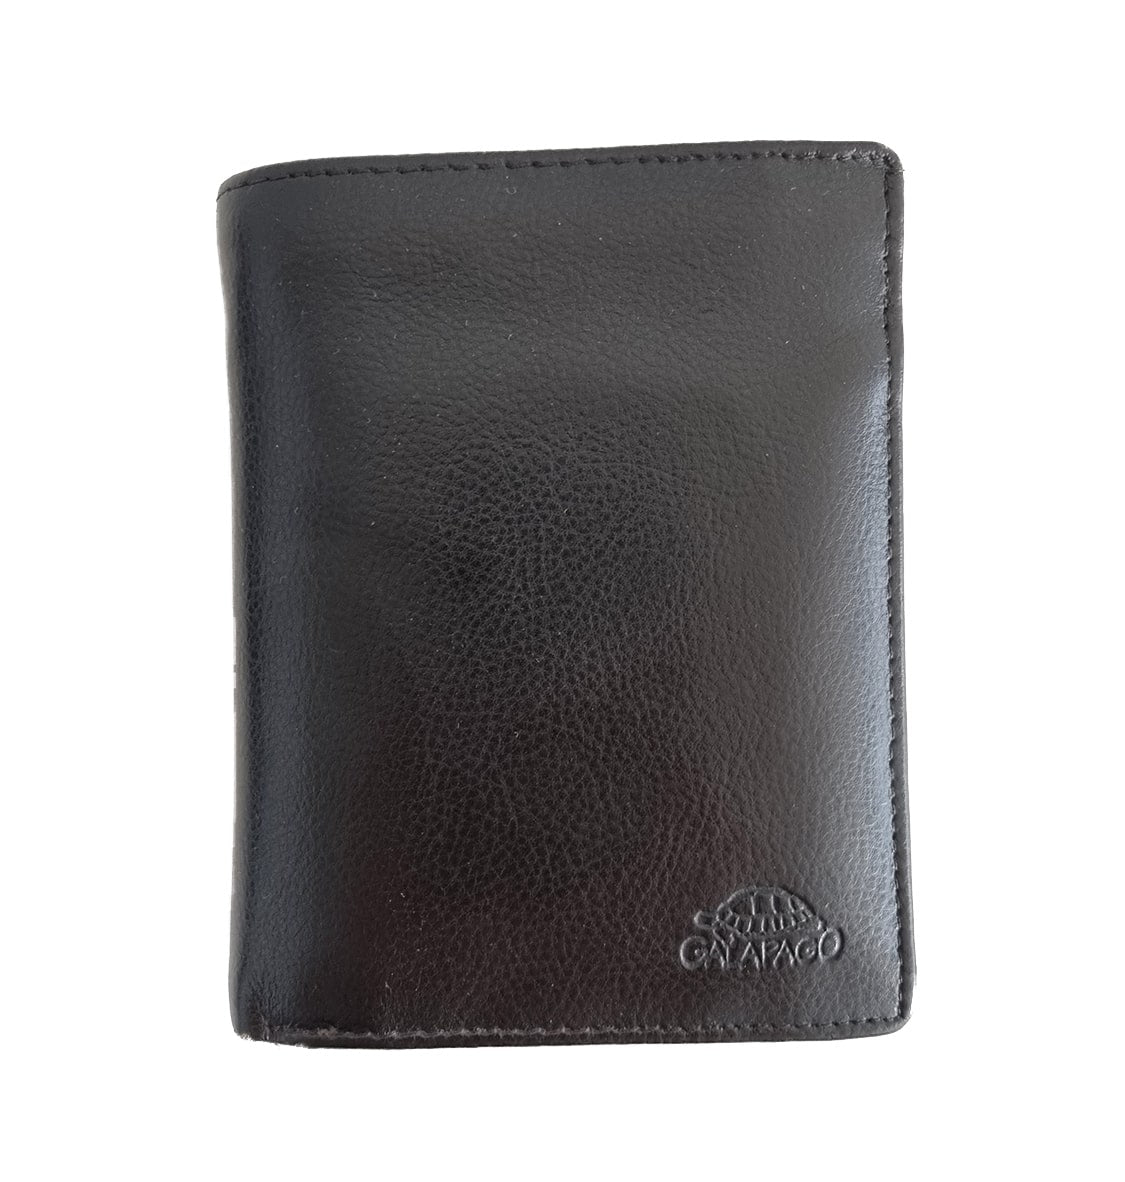 Leather Wallet - Slicier